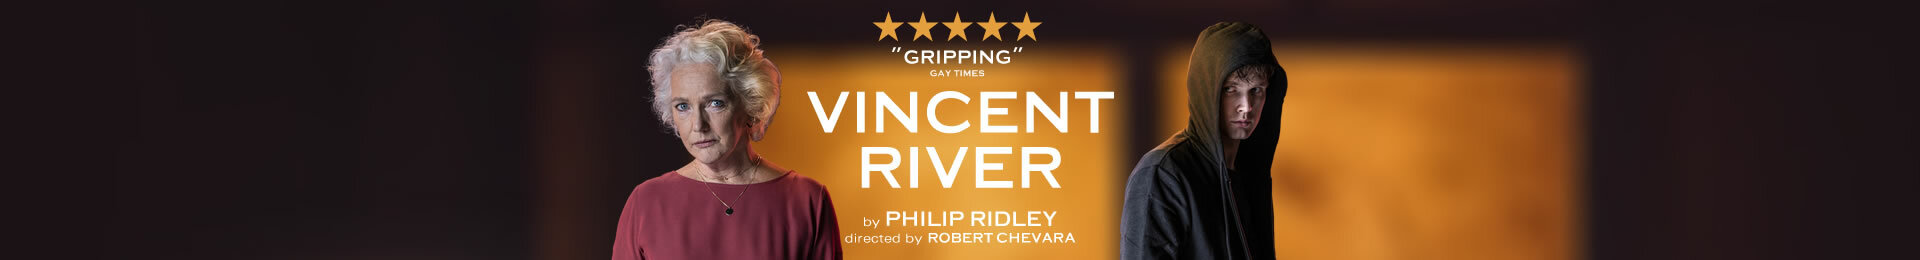 Vincent River banner image